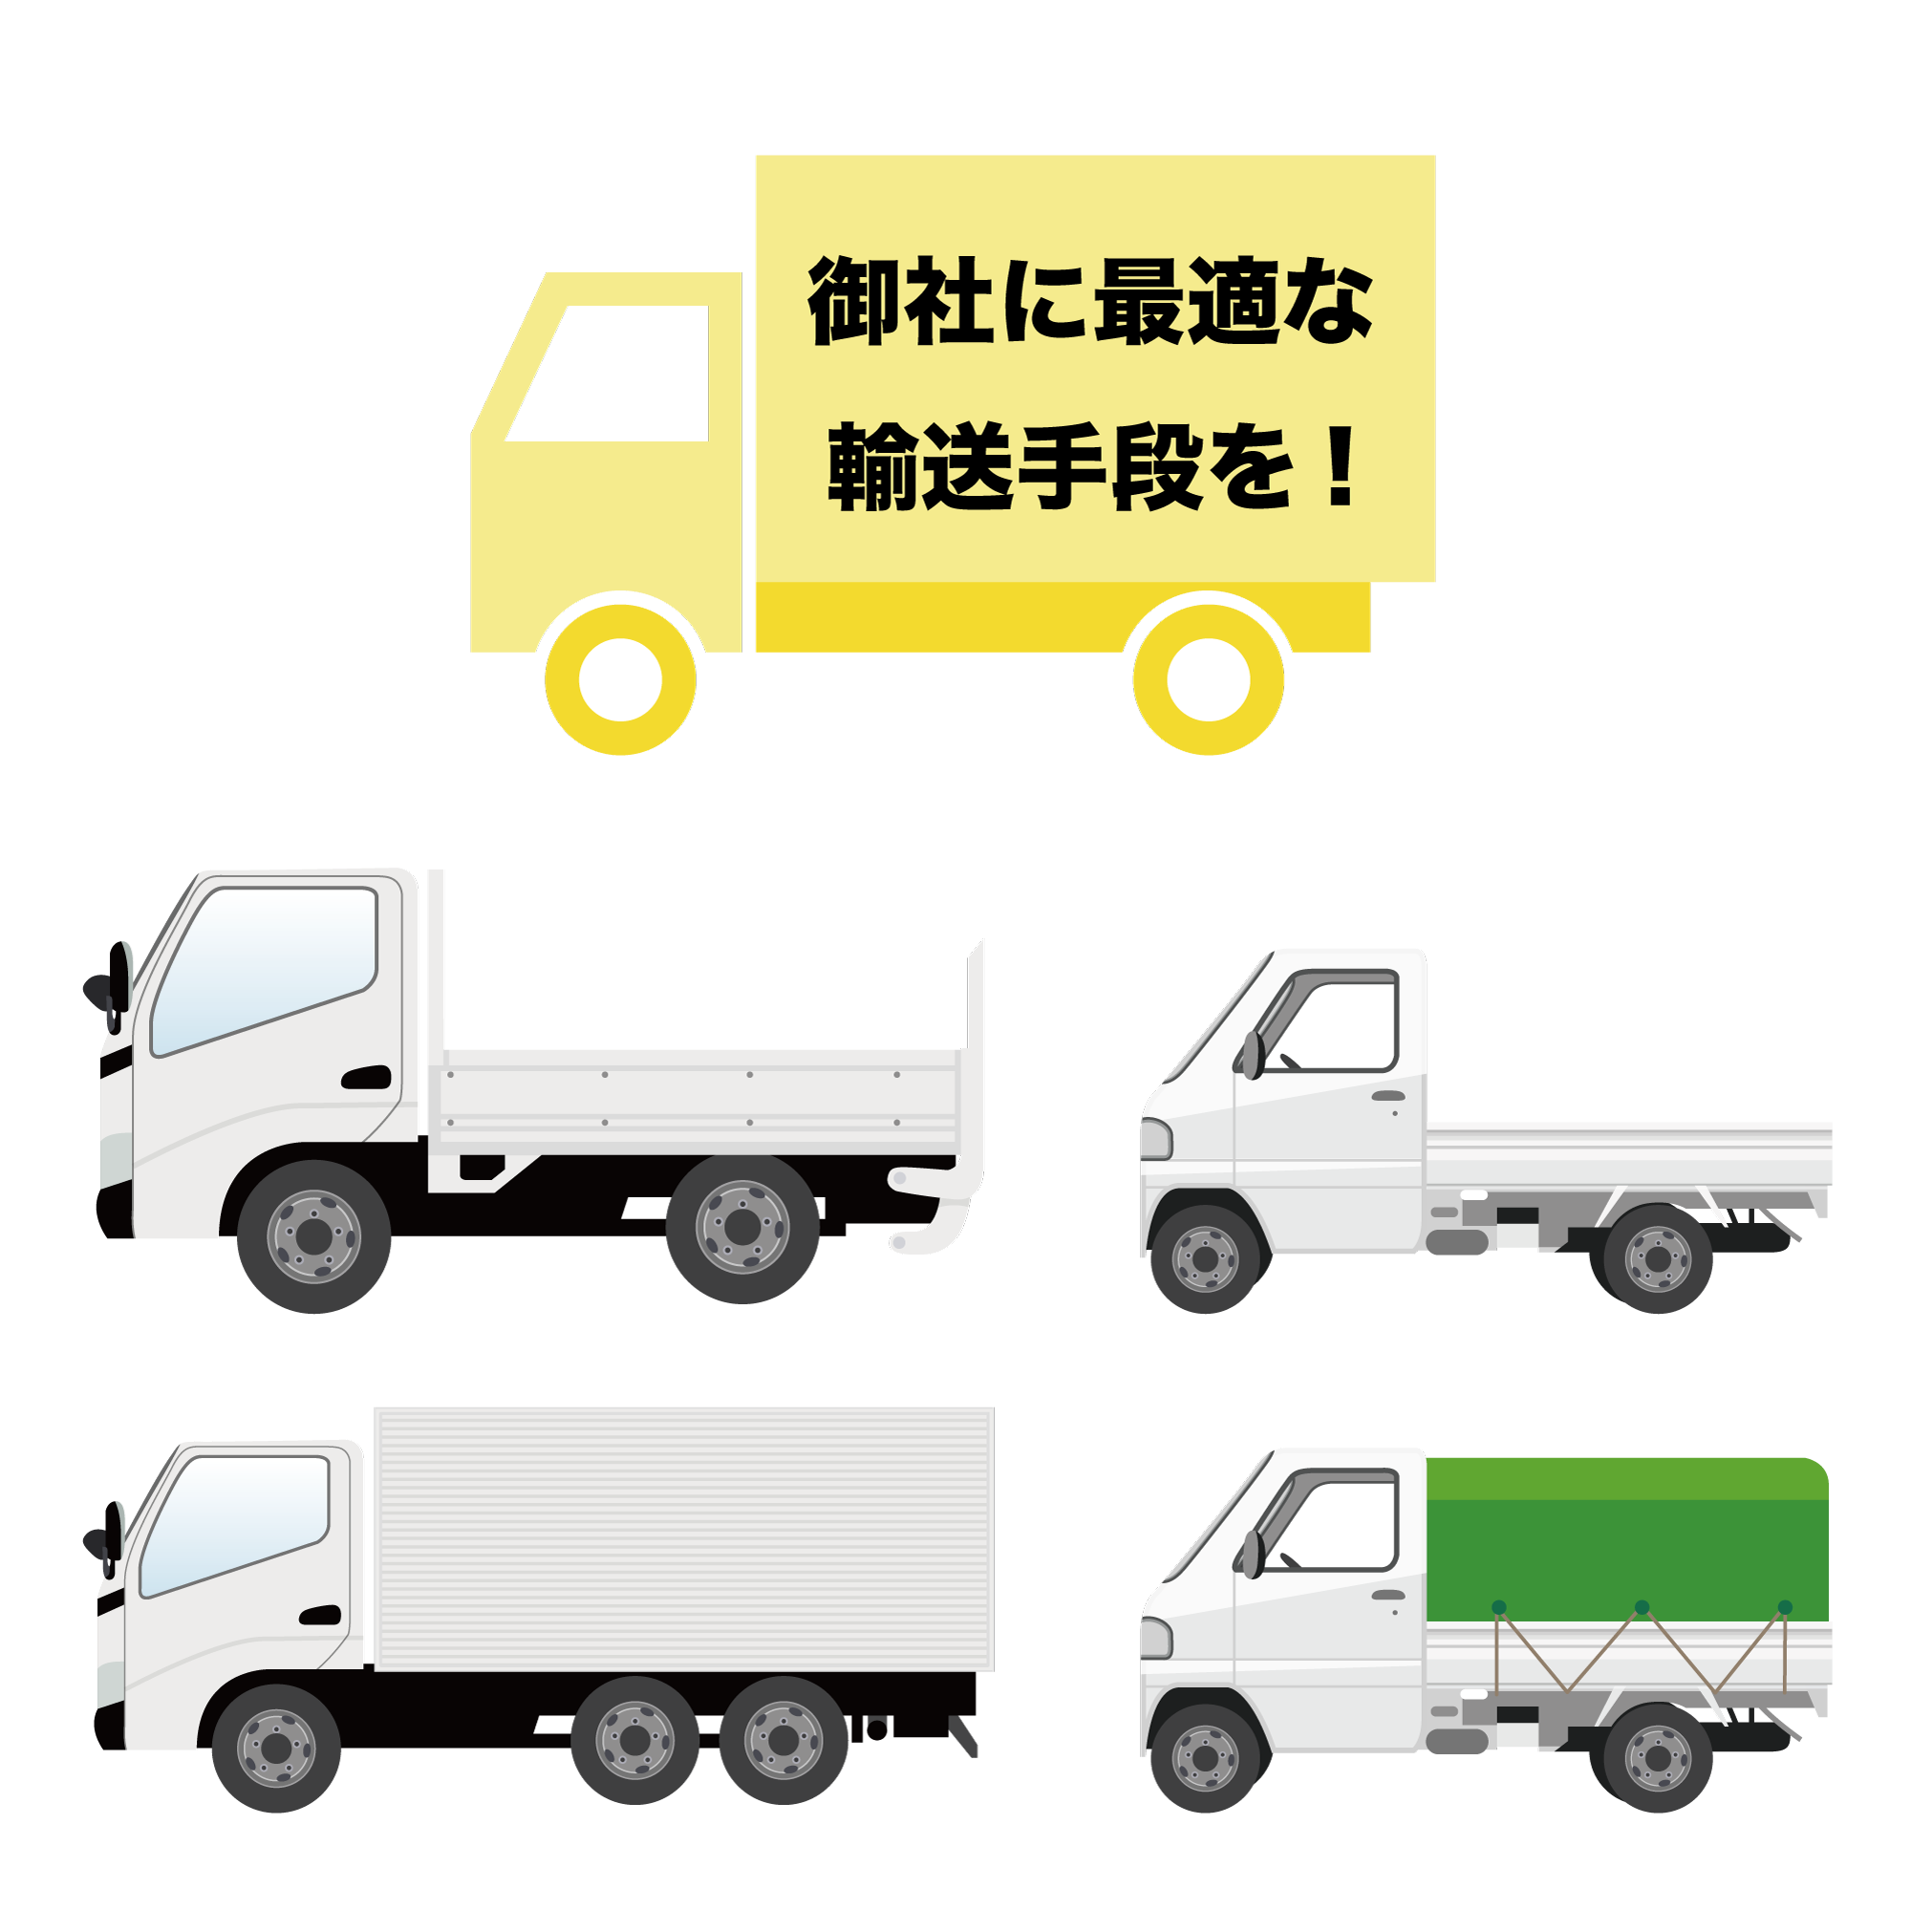 一般貨物自動車運送業務